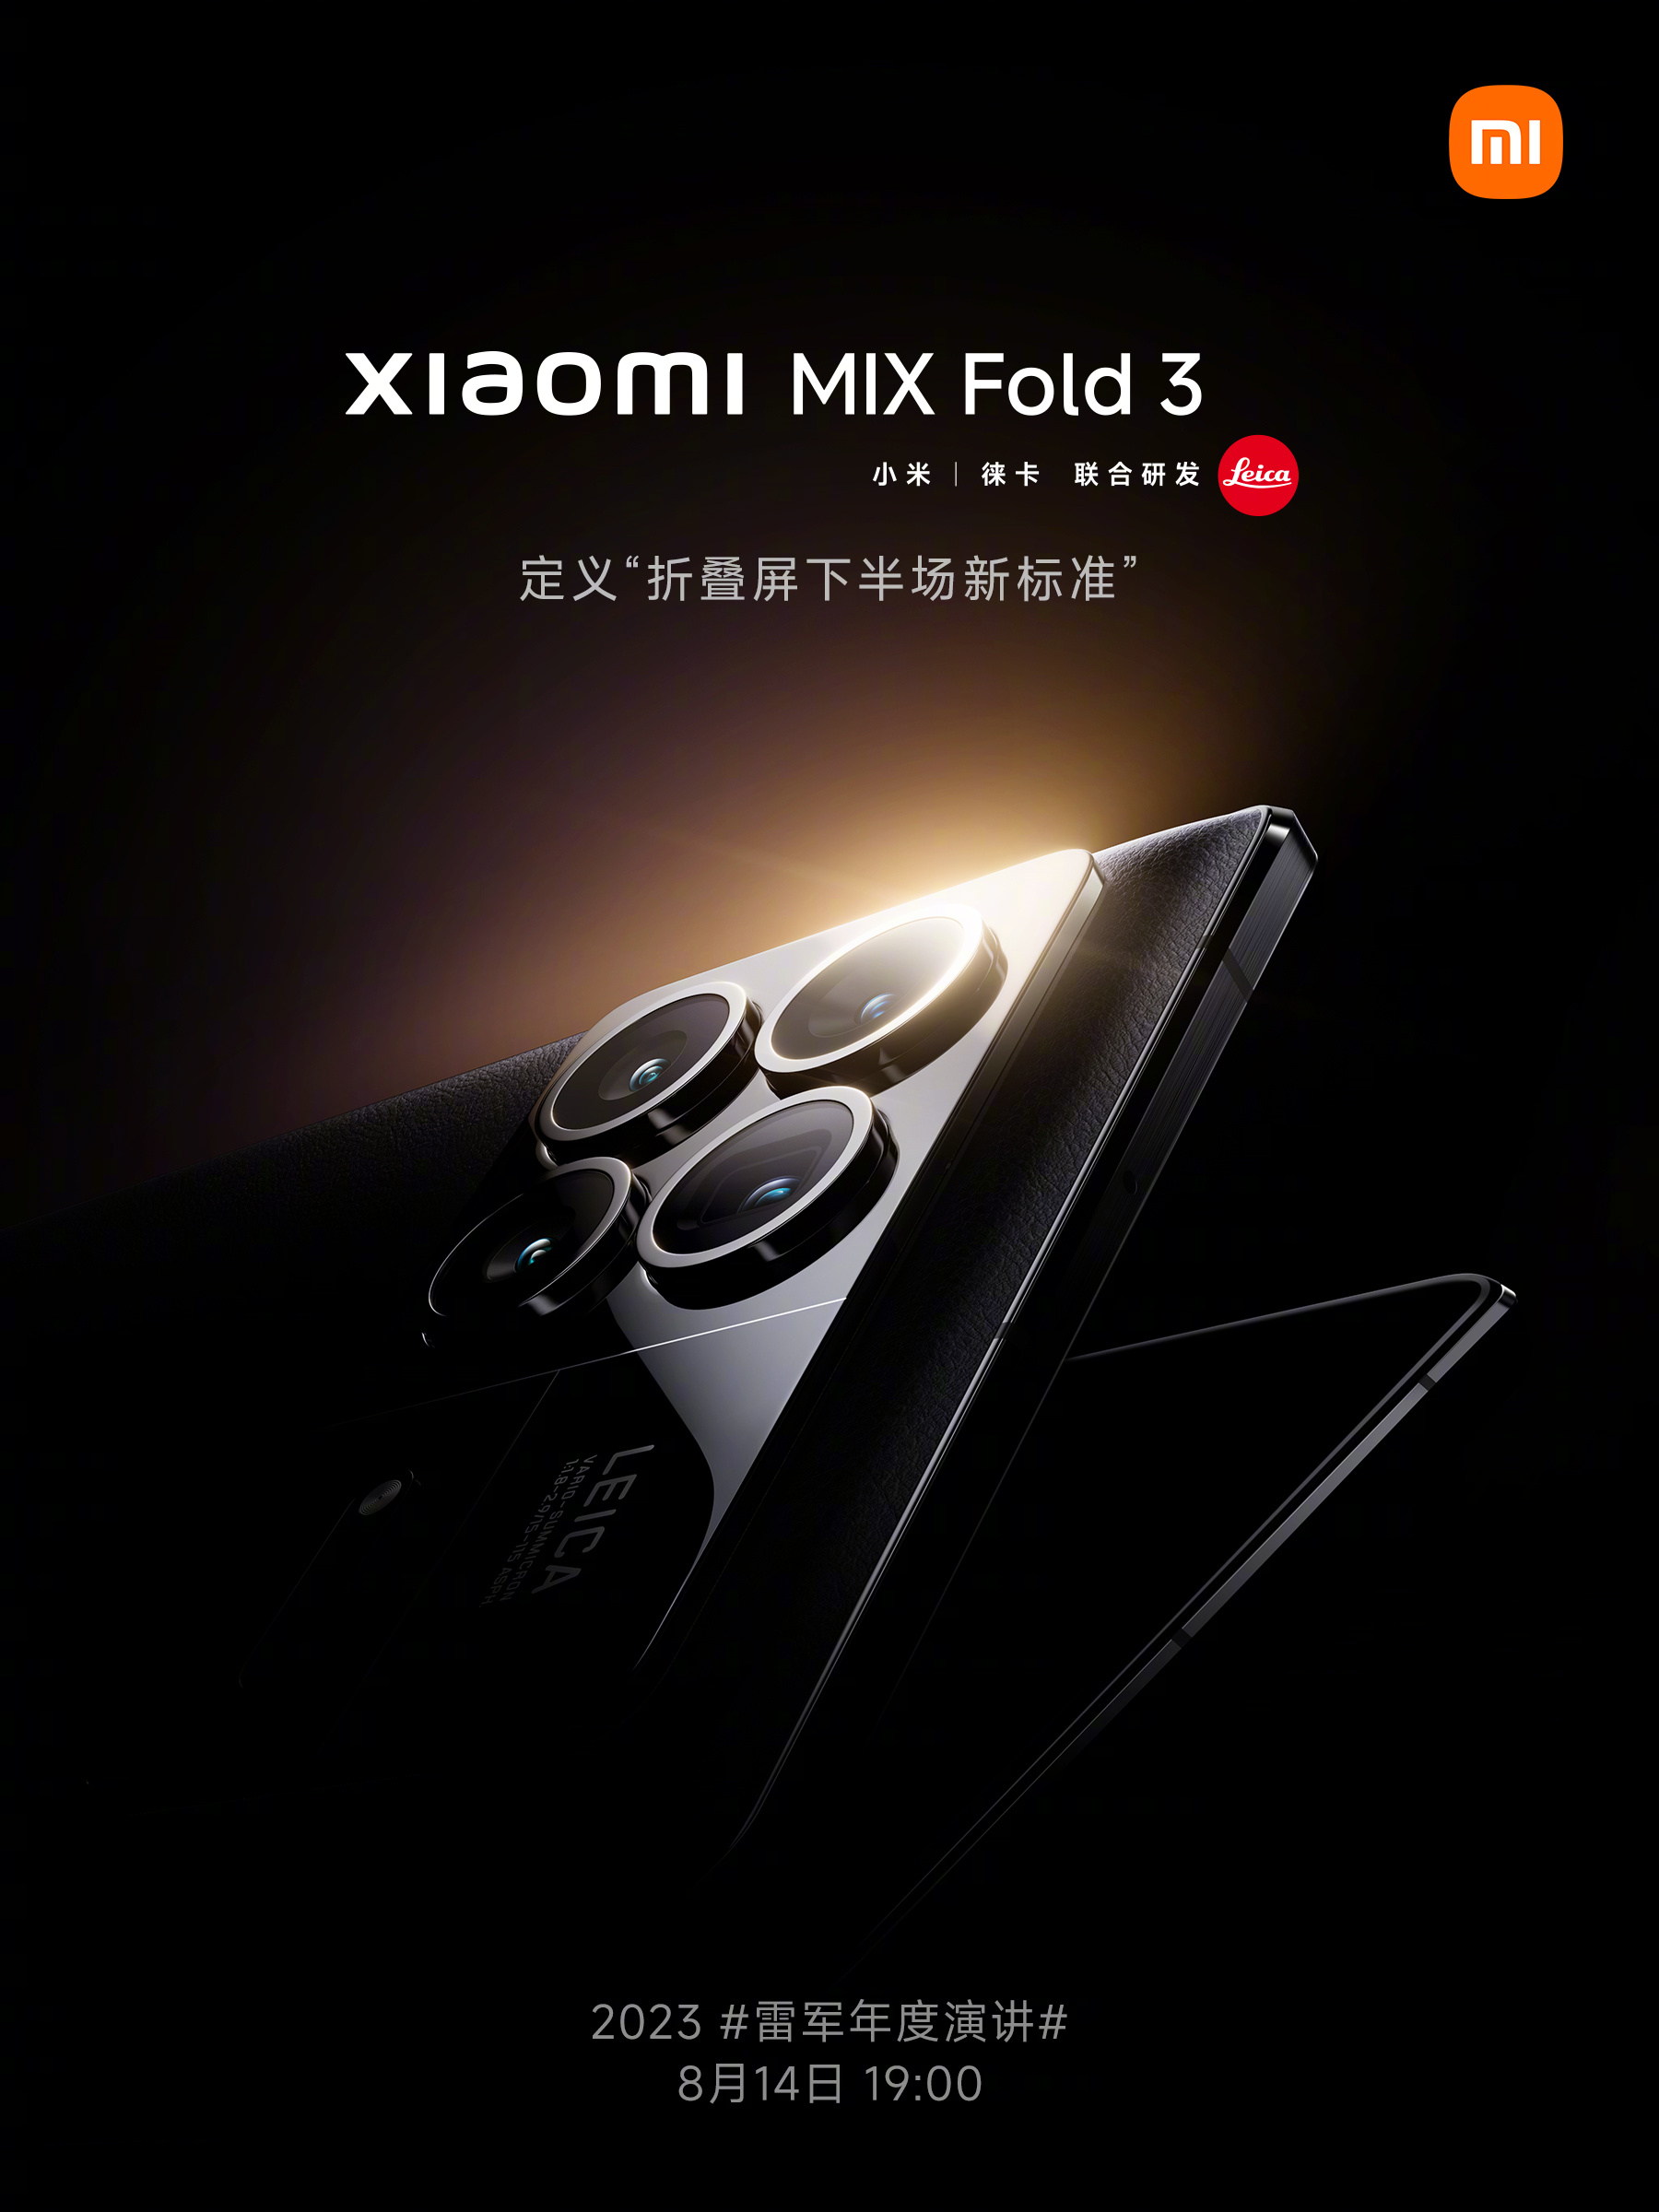 Xiaomi dévoile officiellement son nouveau smartphone haut de gamme